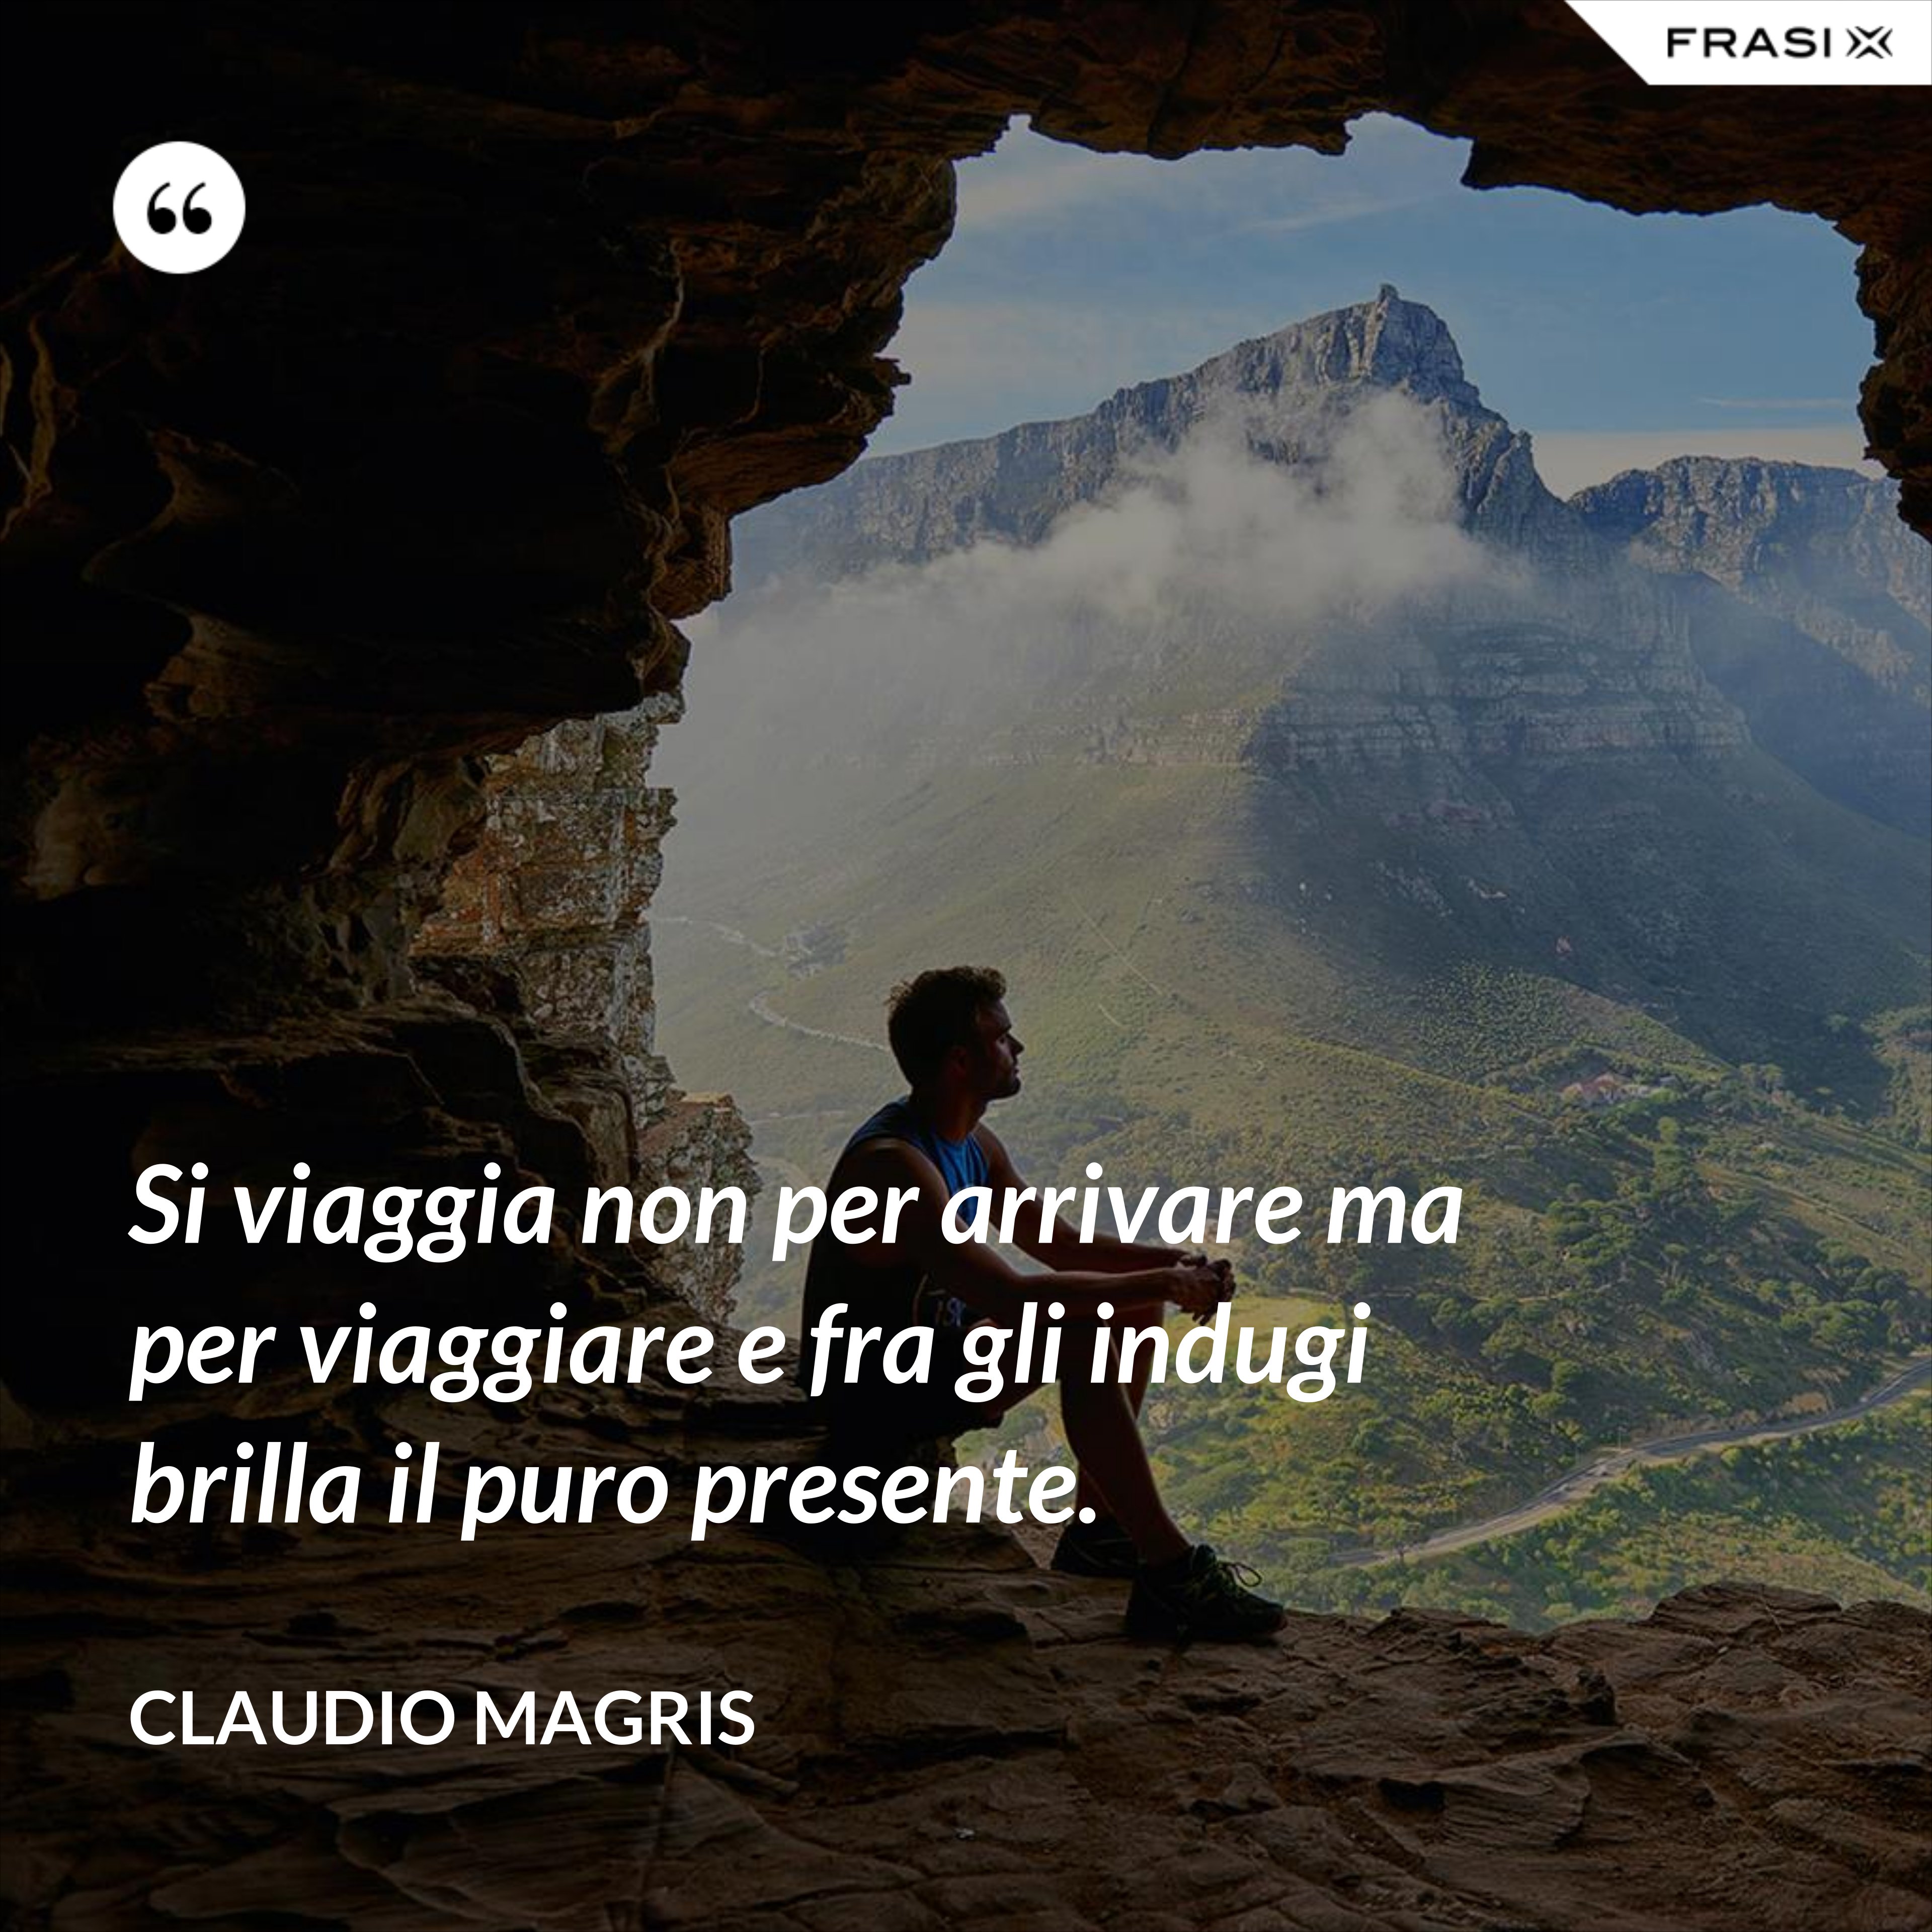 Si viaggia non per arrivare ma per viaggiare e fra gli indugi brilla il puro presente. - Claudio Magris